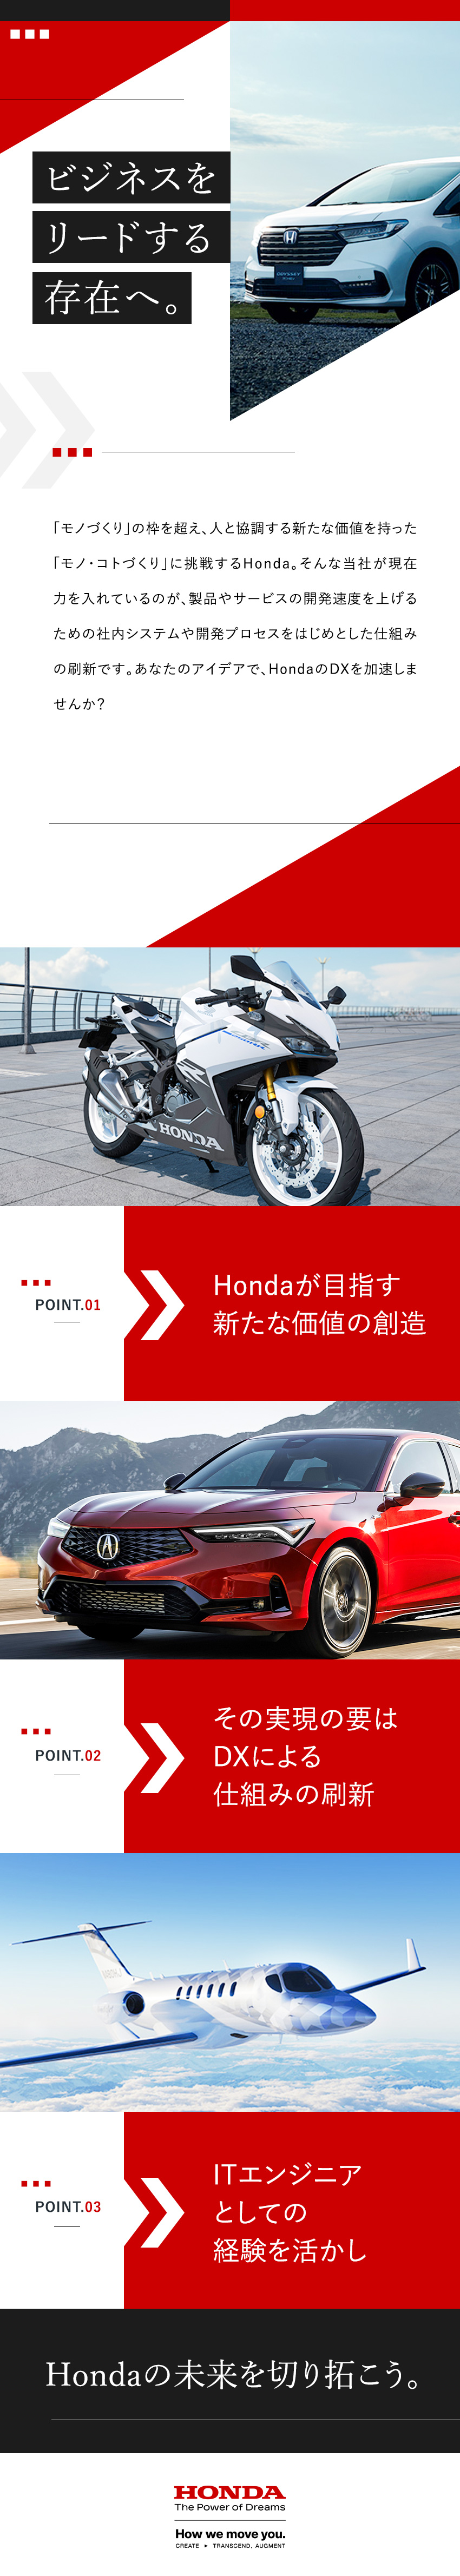 本田技研工業株式会社【プライム市場】 DX企画・推進（Hondaの社内システム開発やプロセス開発）